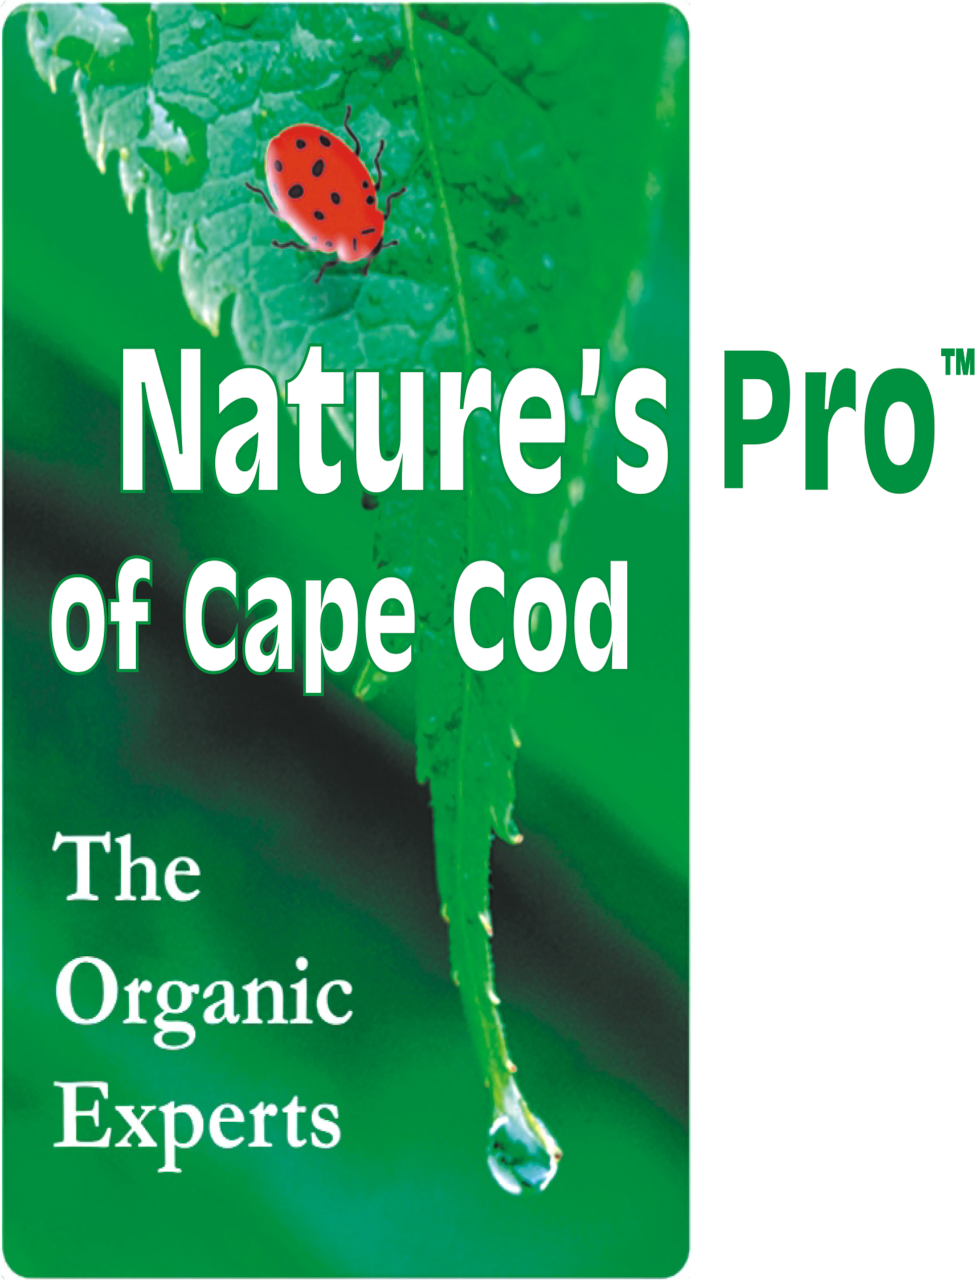 Nature's Pro ladybug logo